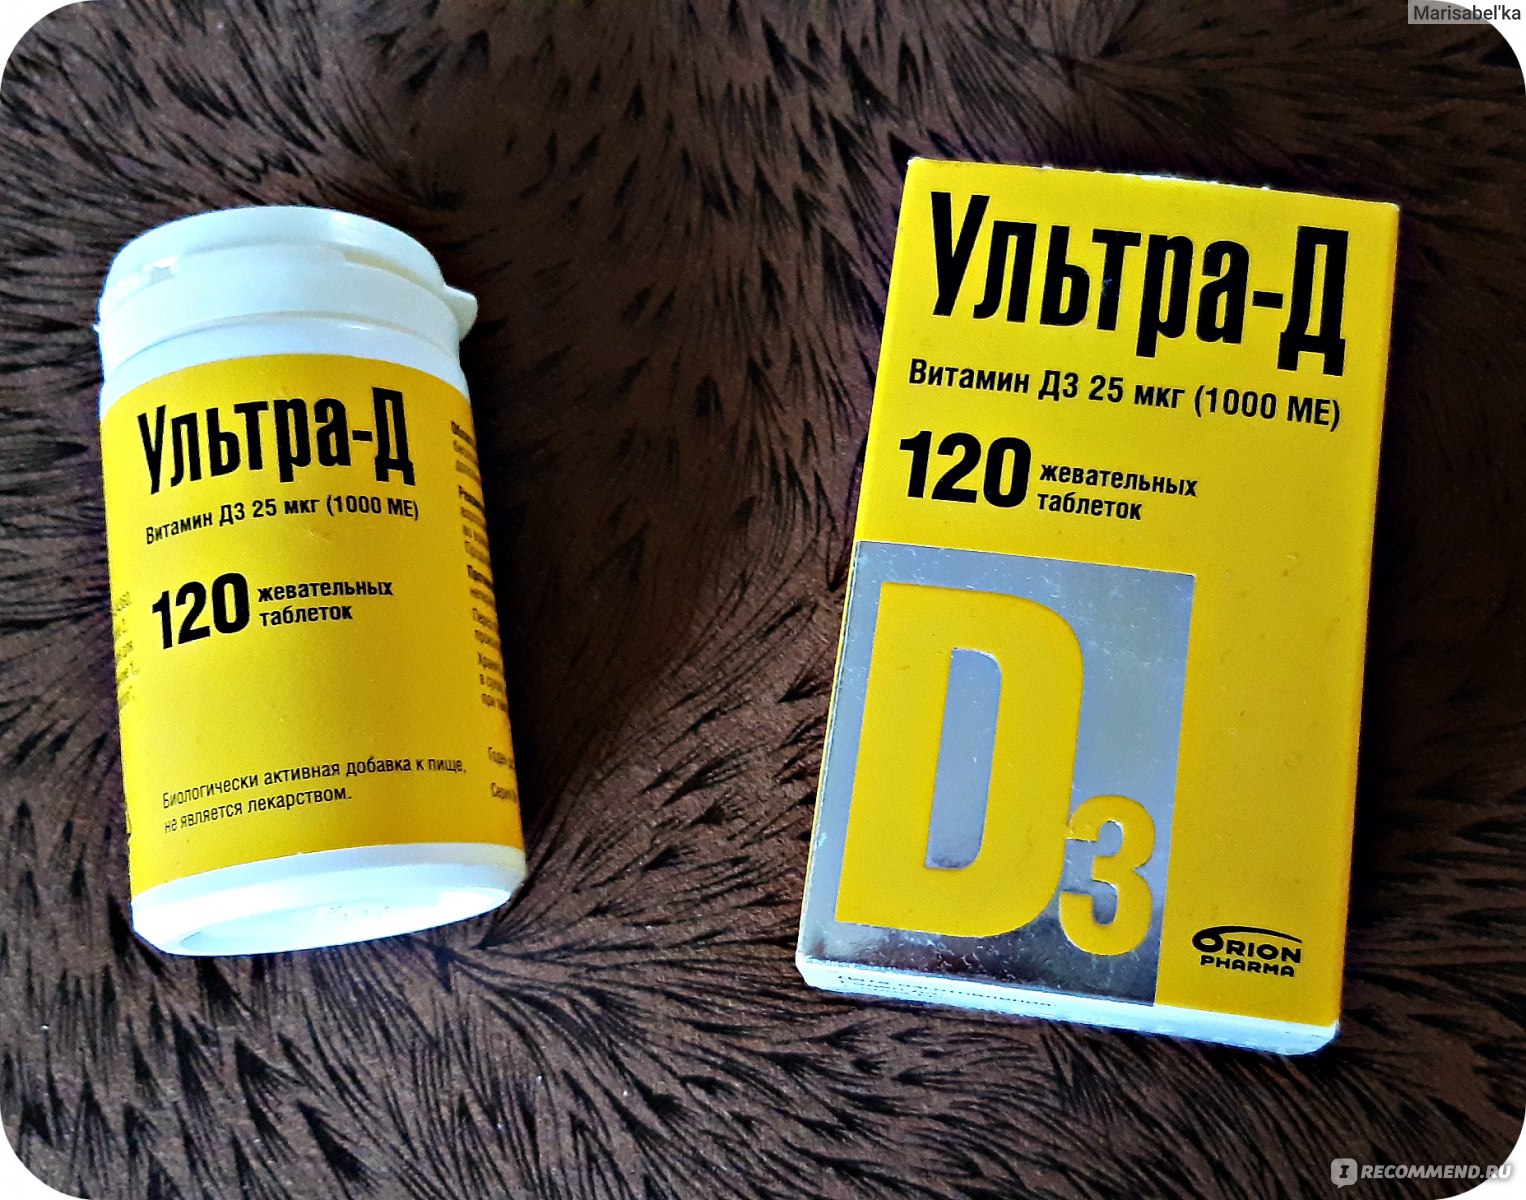 Витамин ультра д3 жевательные таблетки. Ультра-д витамин д3 табл жев 25мкг n120. Ультра-д витамин д3 таб жев 25мкг №120. Витамин д3 ультра д 1000ме. Витамин д ультра д 2000ед.